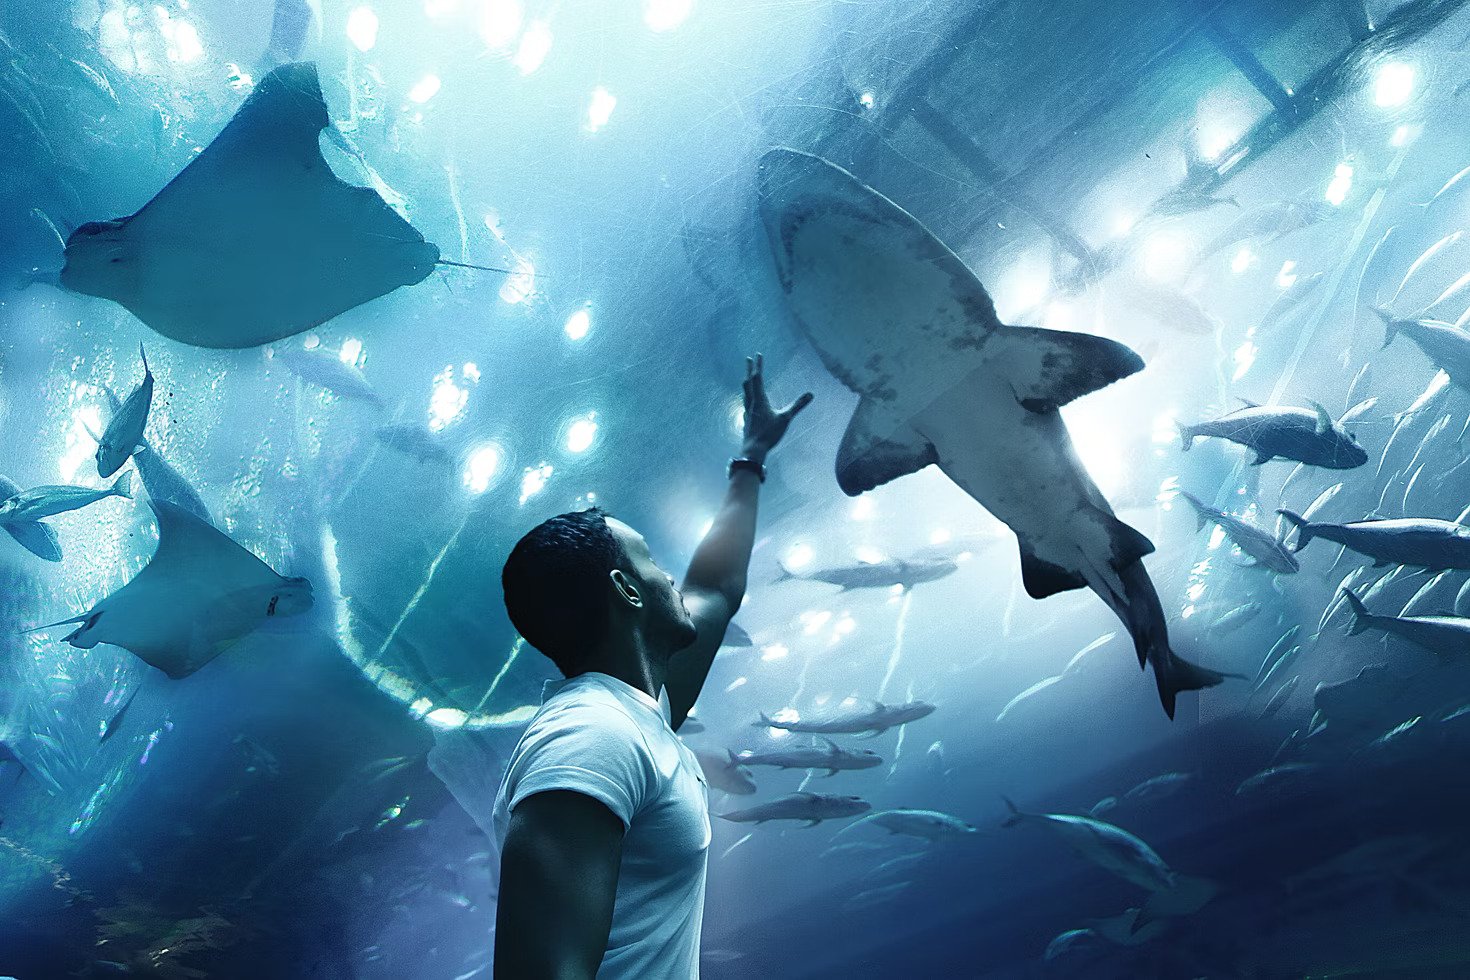 Combo : LEGOLAND® Water Park + Dubai Aquarium and Underwater Zoo Tickets